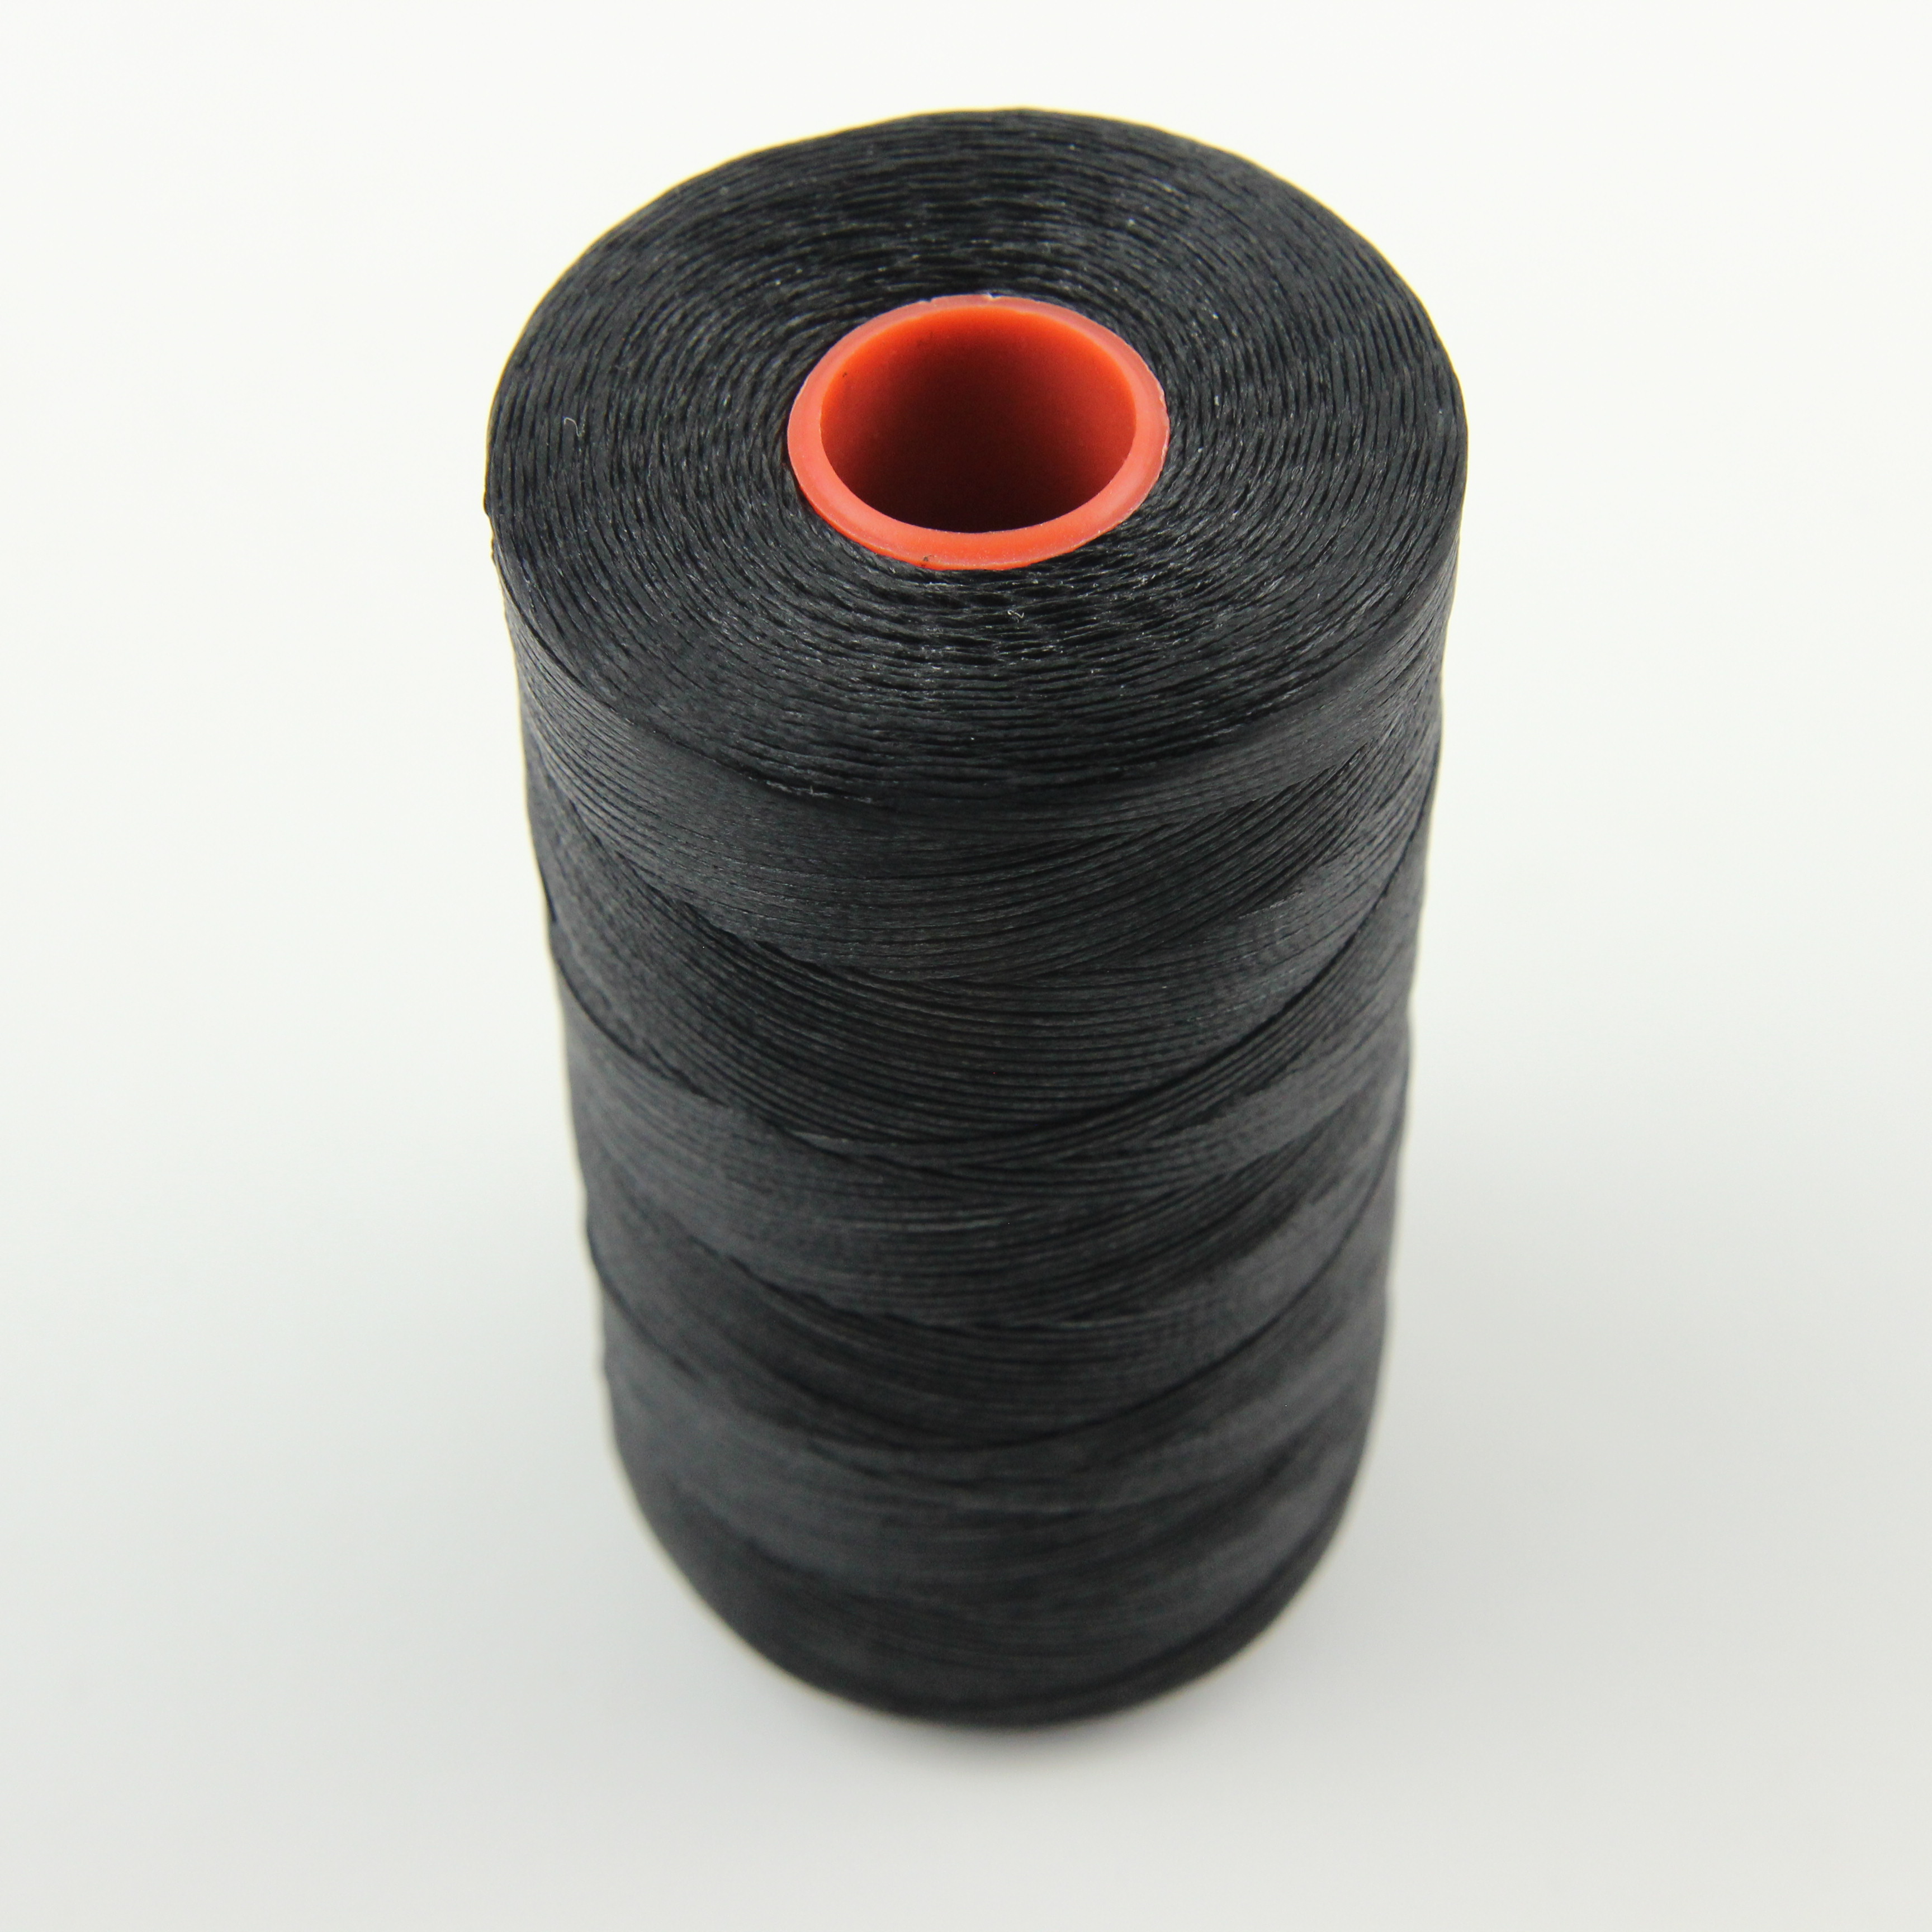 Нить для перетяжки руля вощеная (цвет черный SIM 1), толщина 0.8 мм, длина 500 метров "Турция" детальная фотка